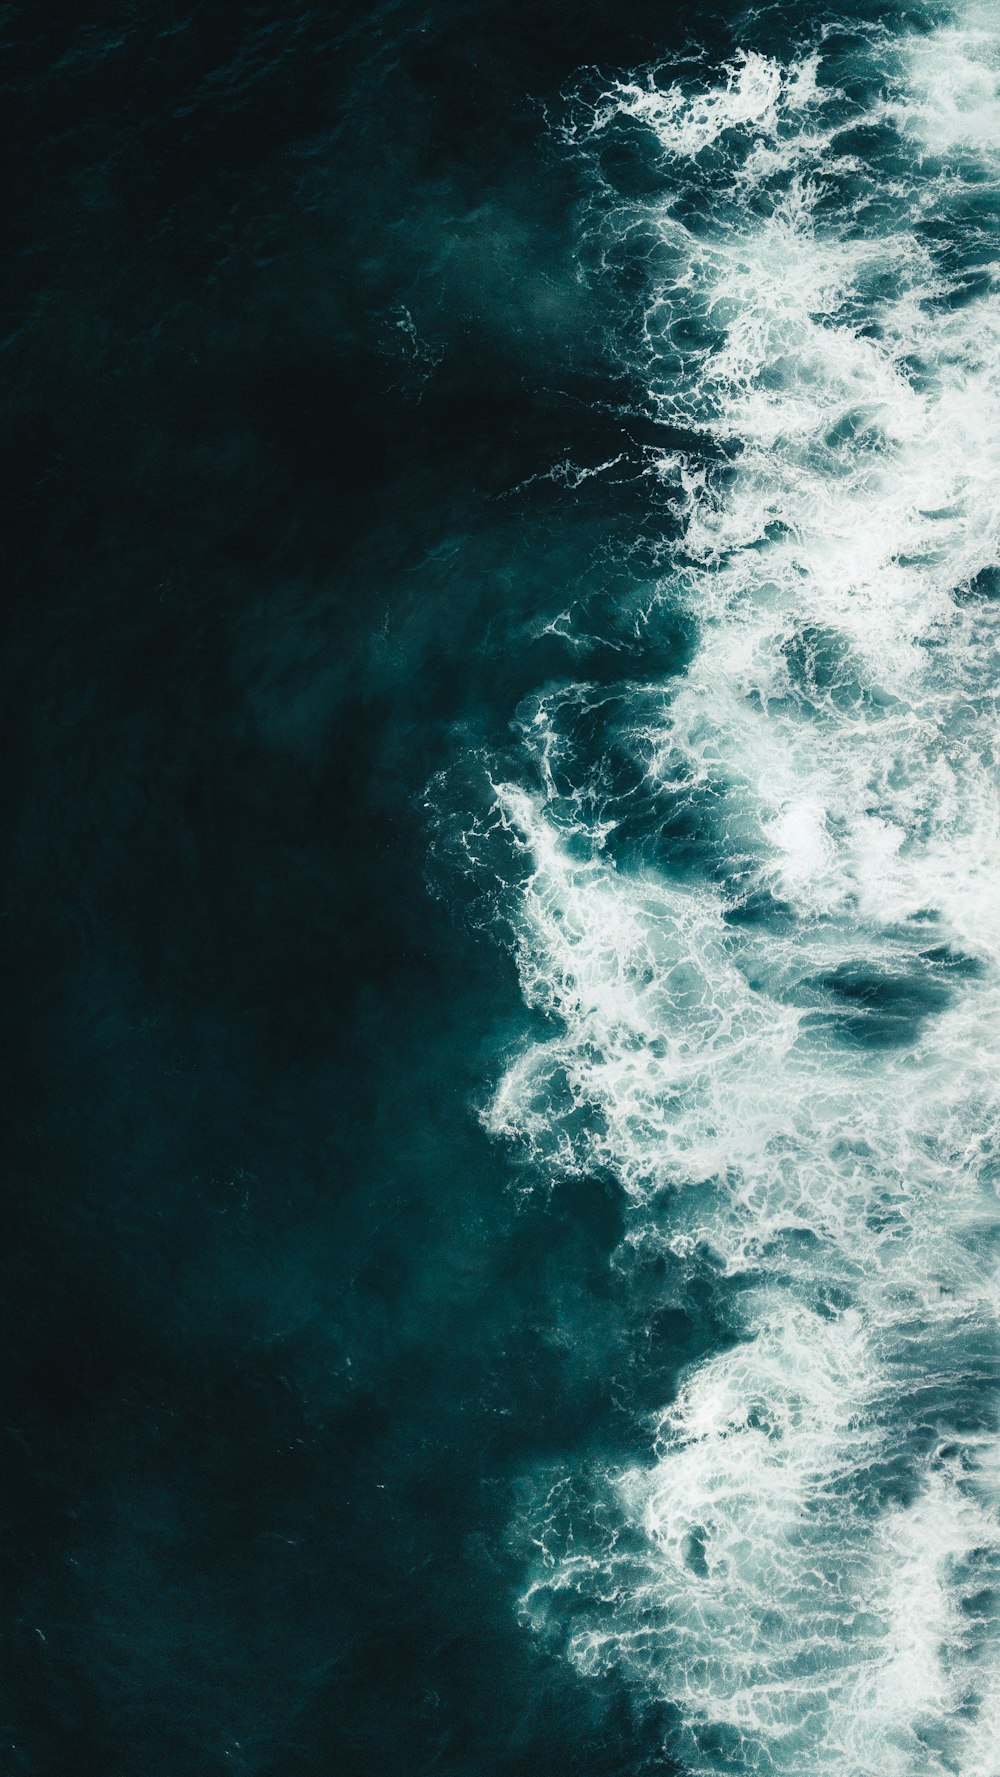 900 以上の海の背景画像 Unsplash で Hd 背景をダウンロード